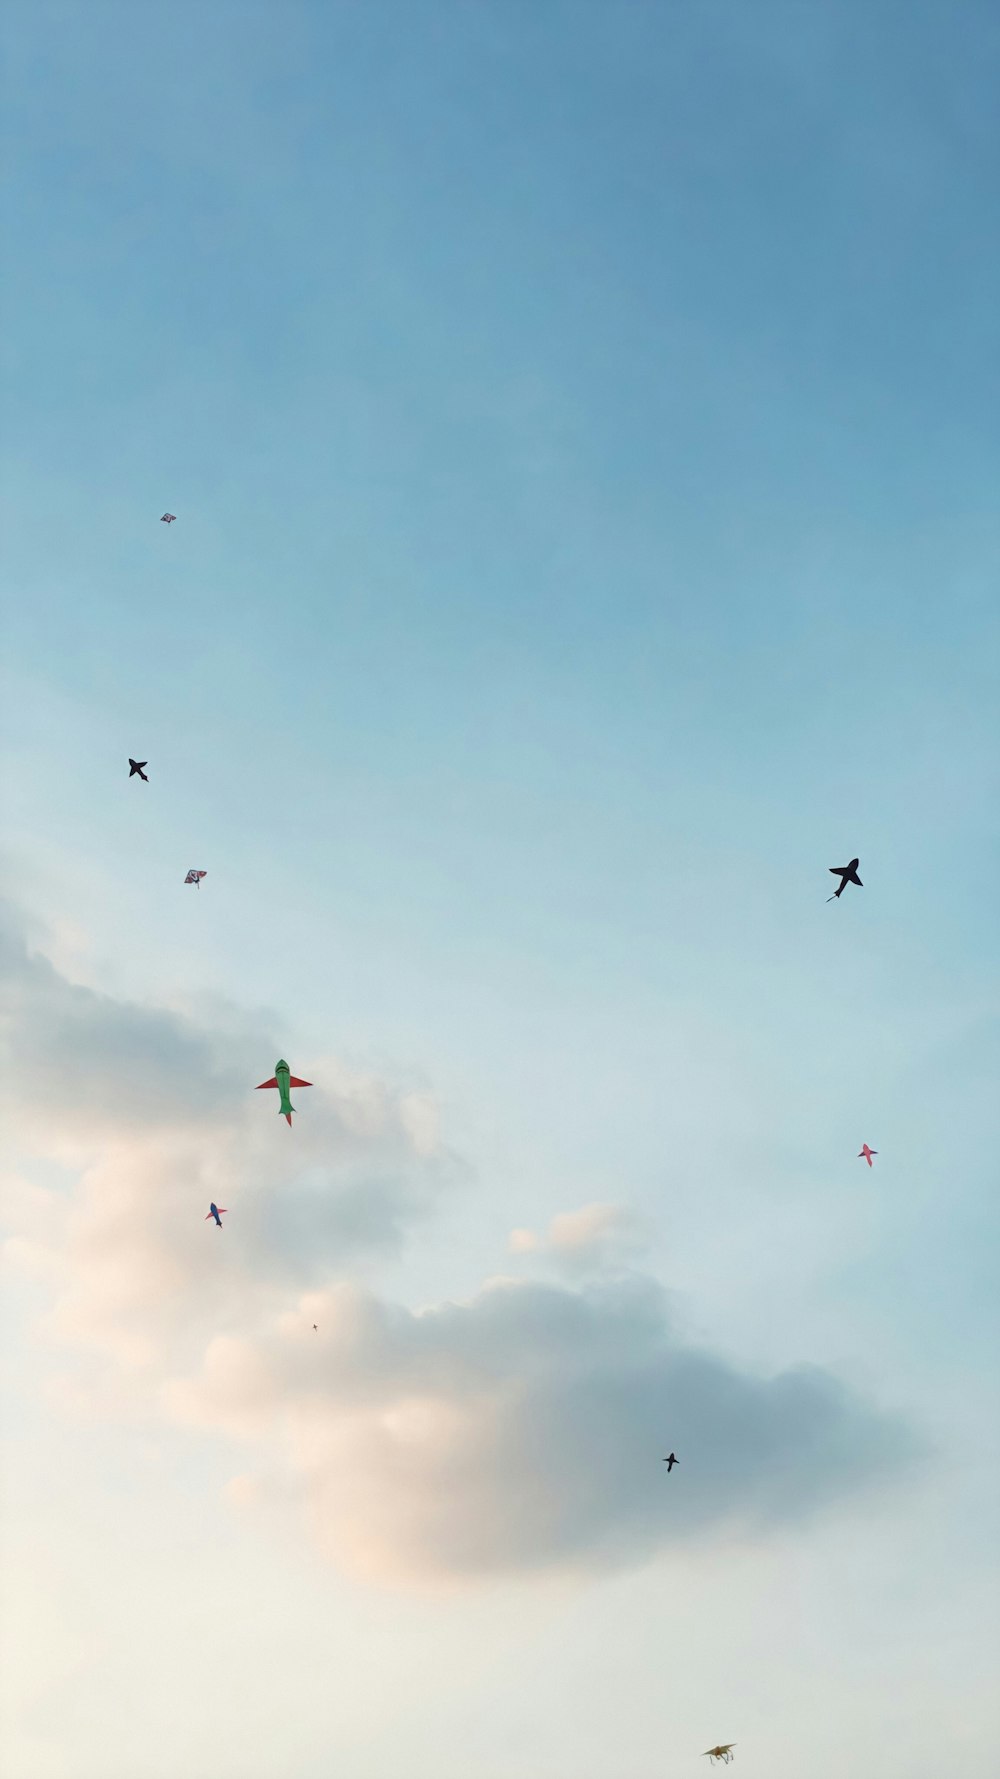 Tiefwinkelfotografie der Silhouette von Vögeln, die tagsüber unter blauem Himmel fliegen